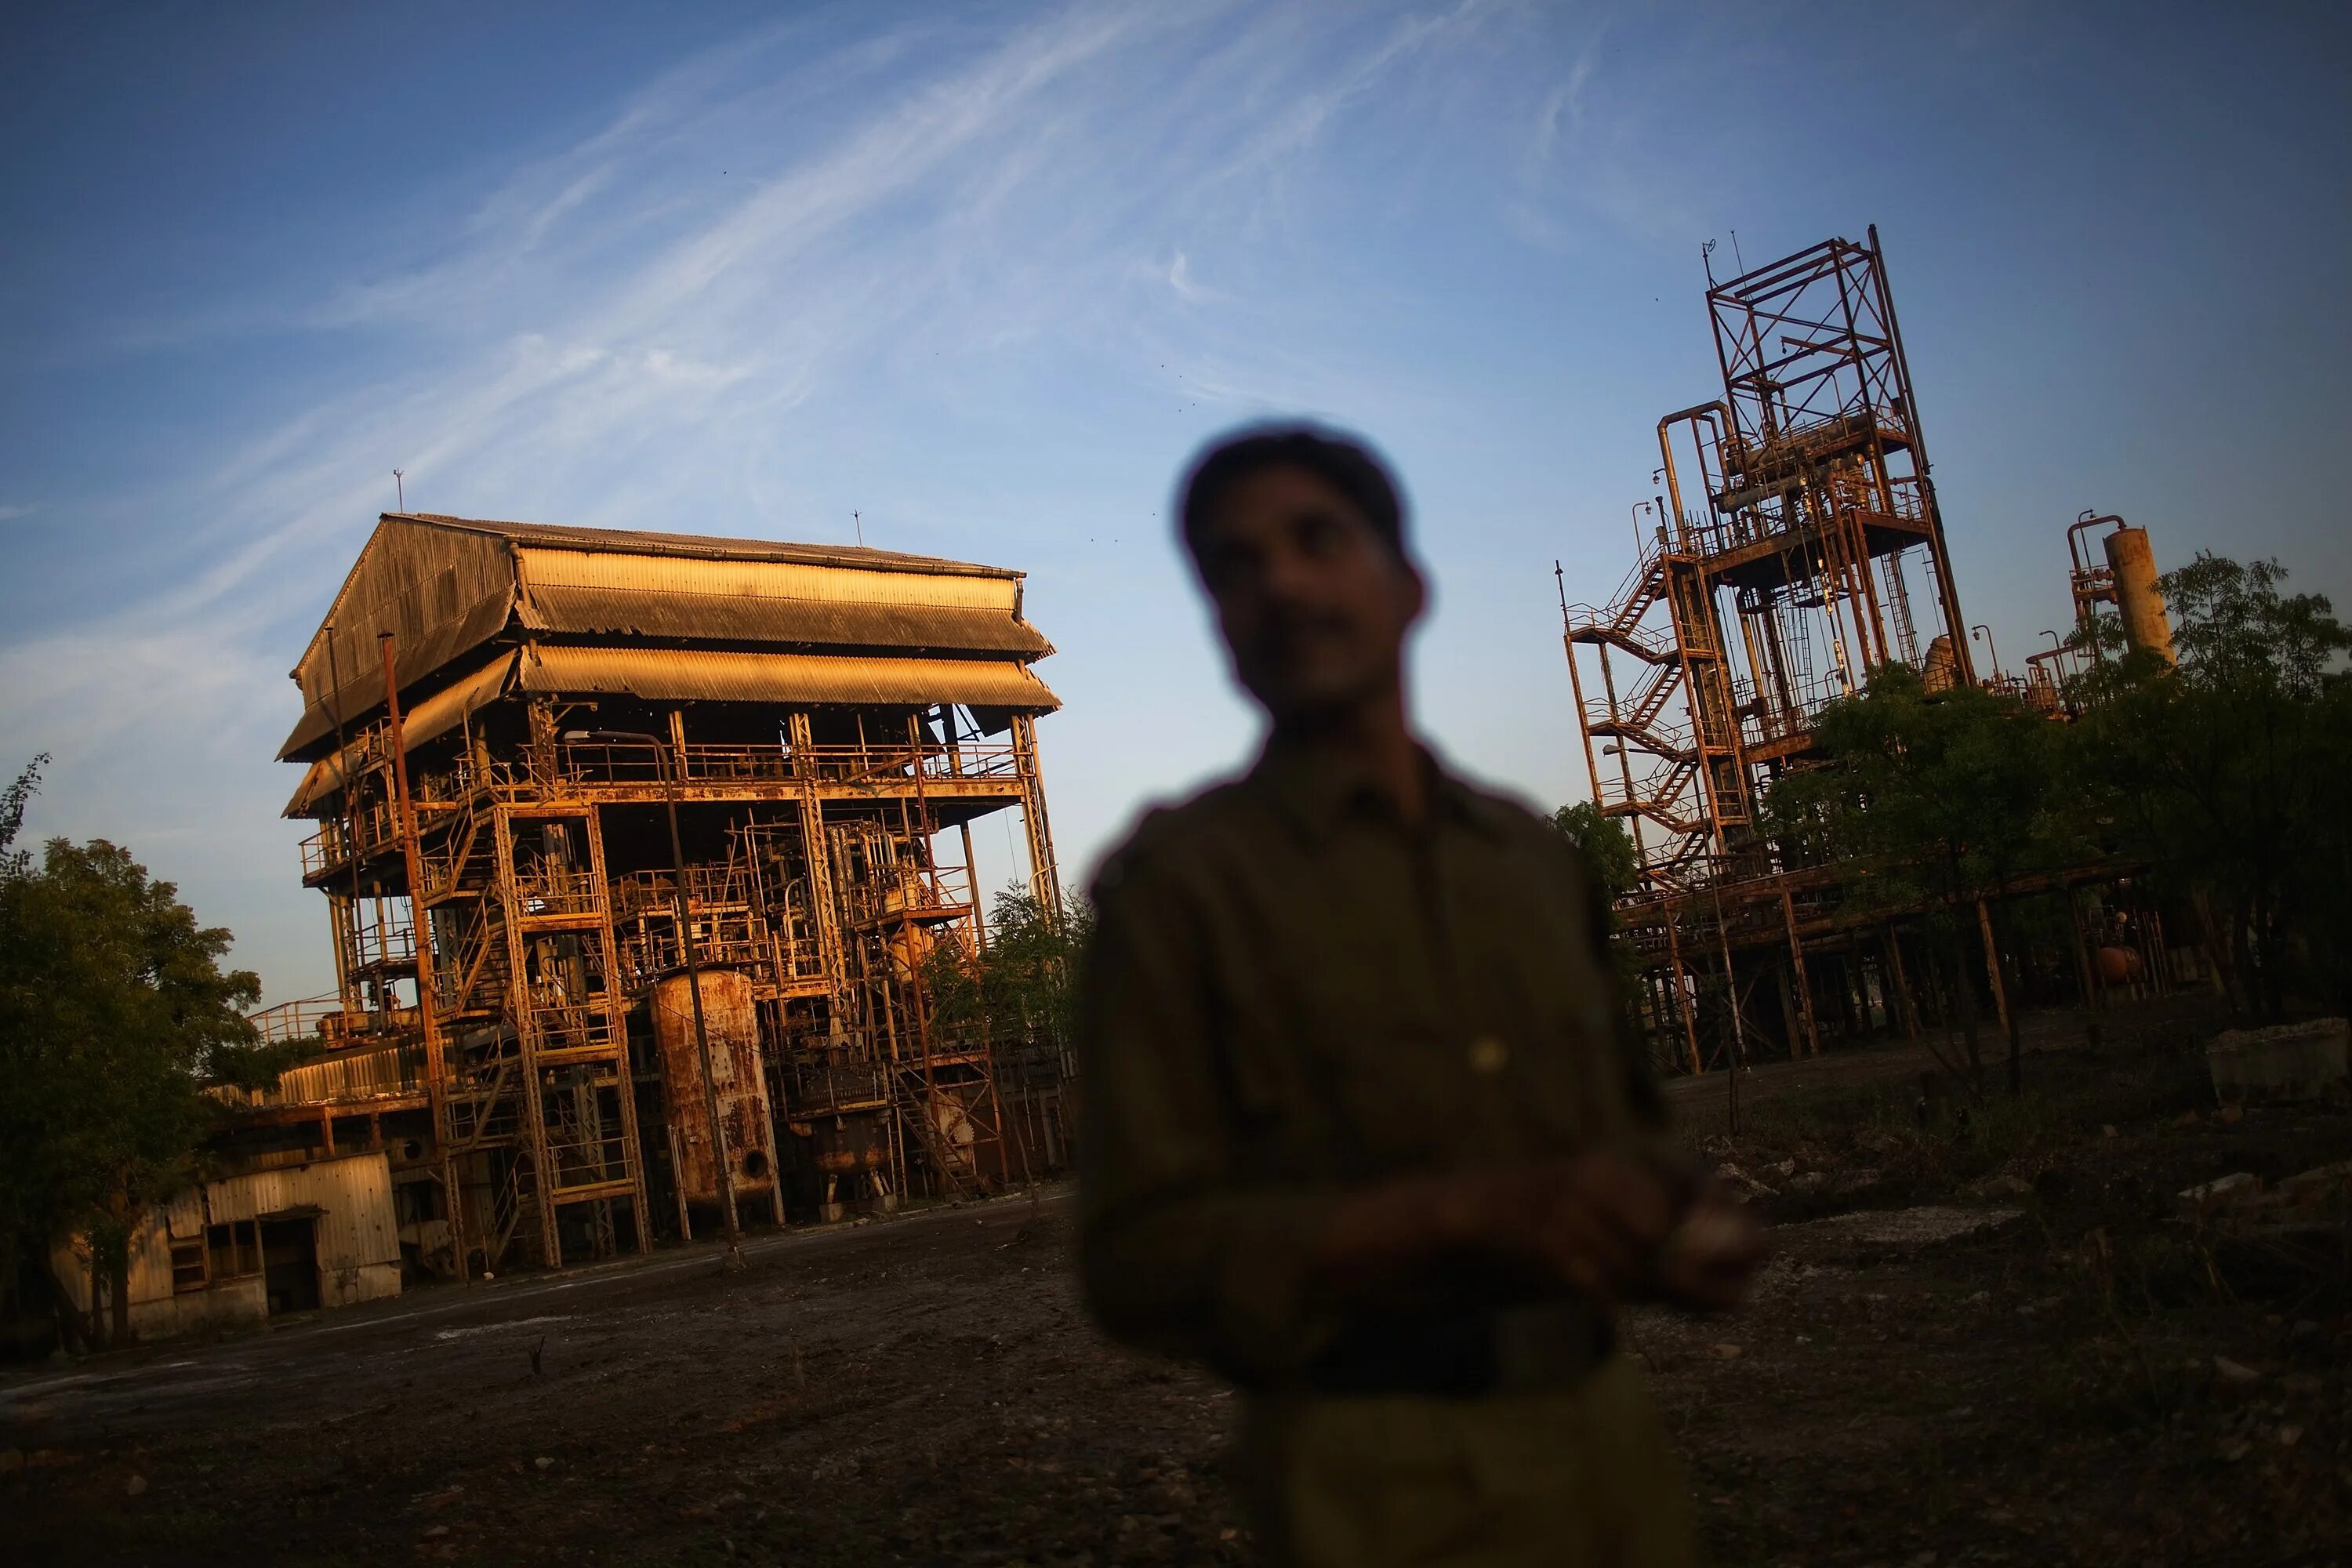 Индия Бхопал завод Union Carbide в 1984. Юнион Карбайд в Бхопале. Завод Union Carbide Бхопал. Бхопальская катастрофа 3 декабря 1984 года. Бхопал индия